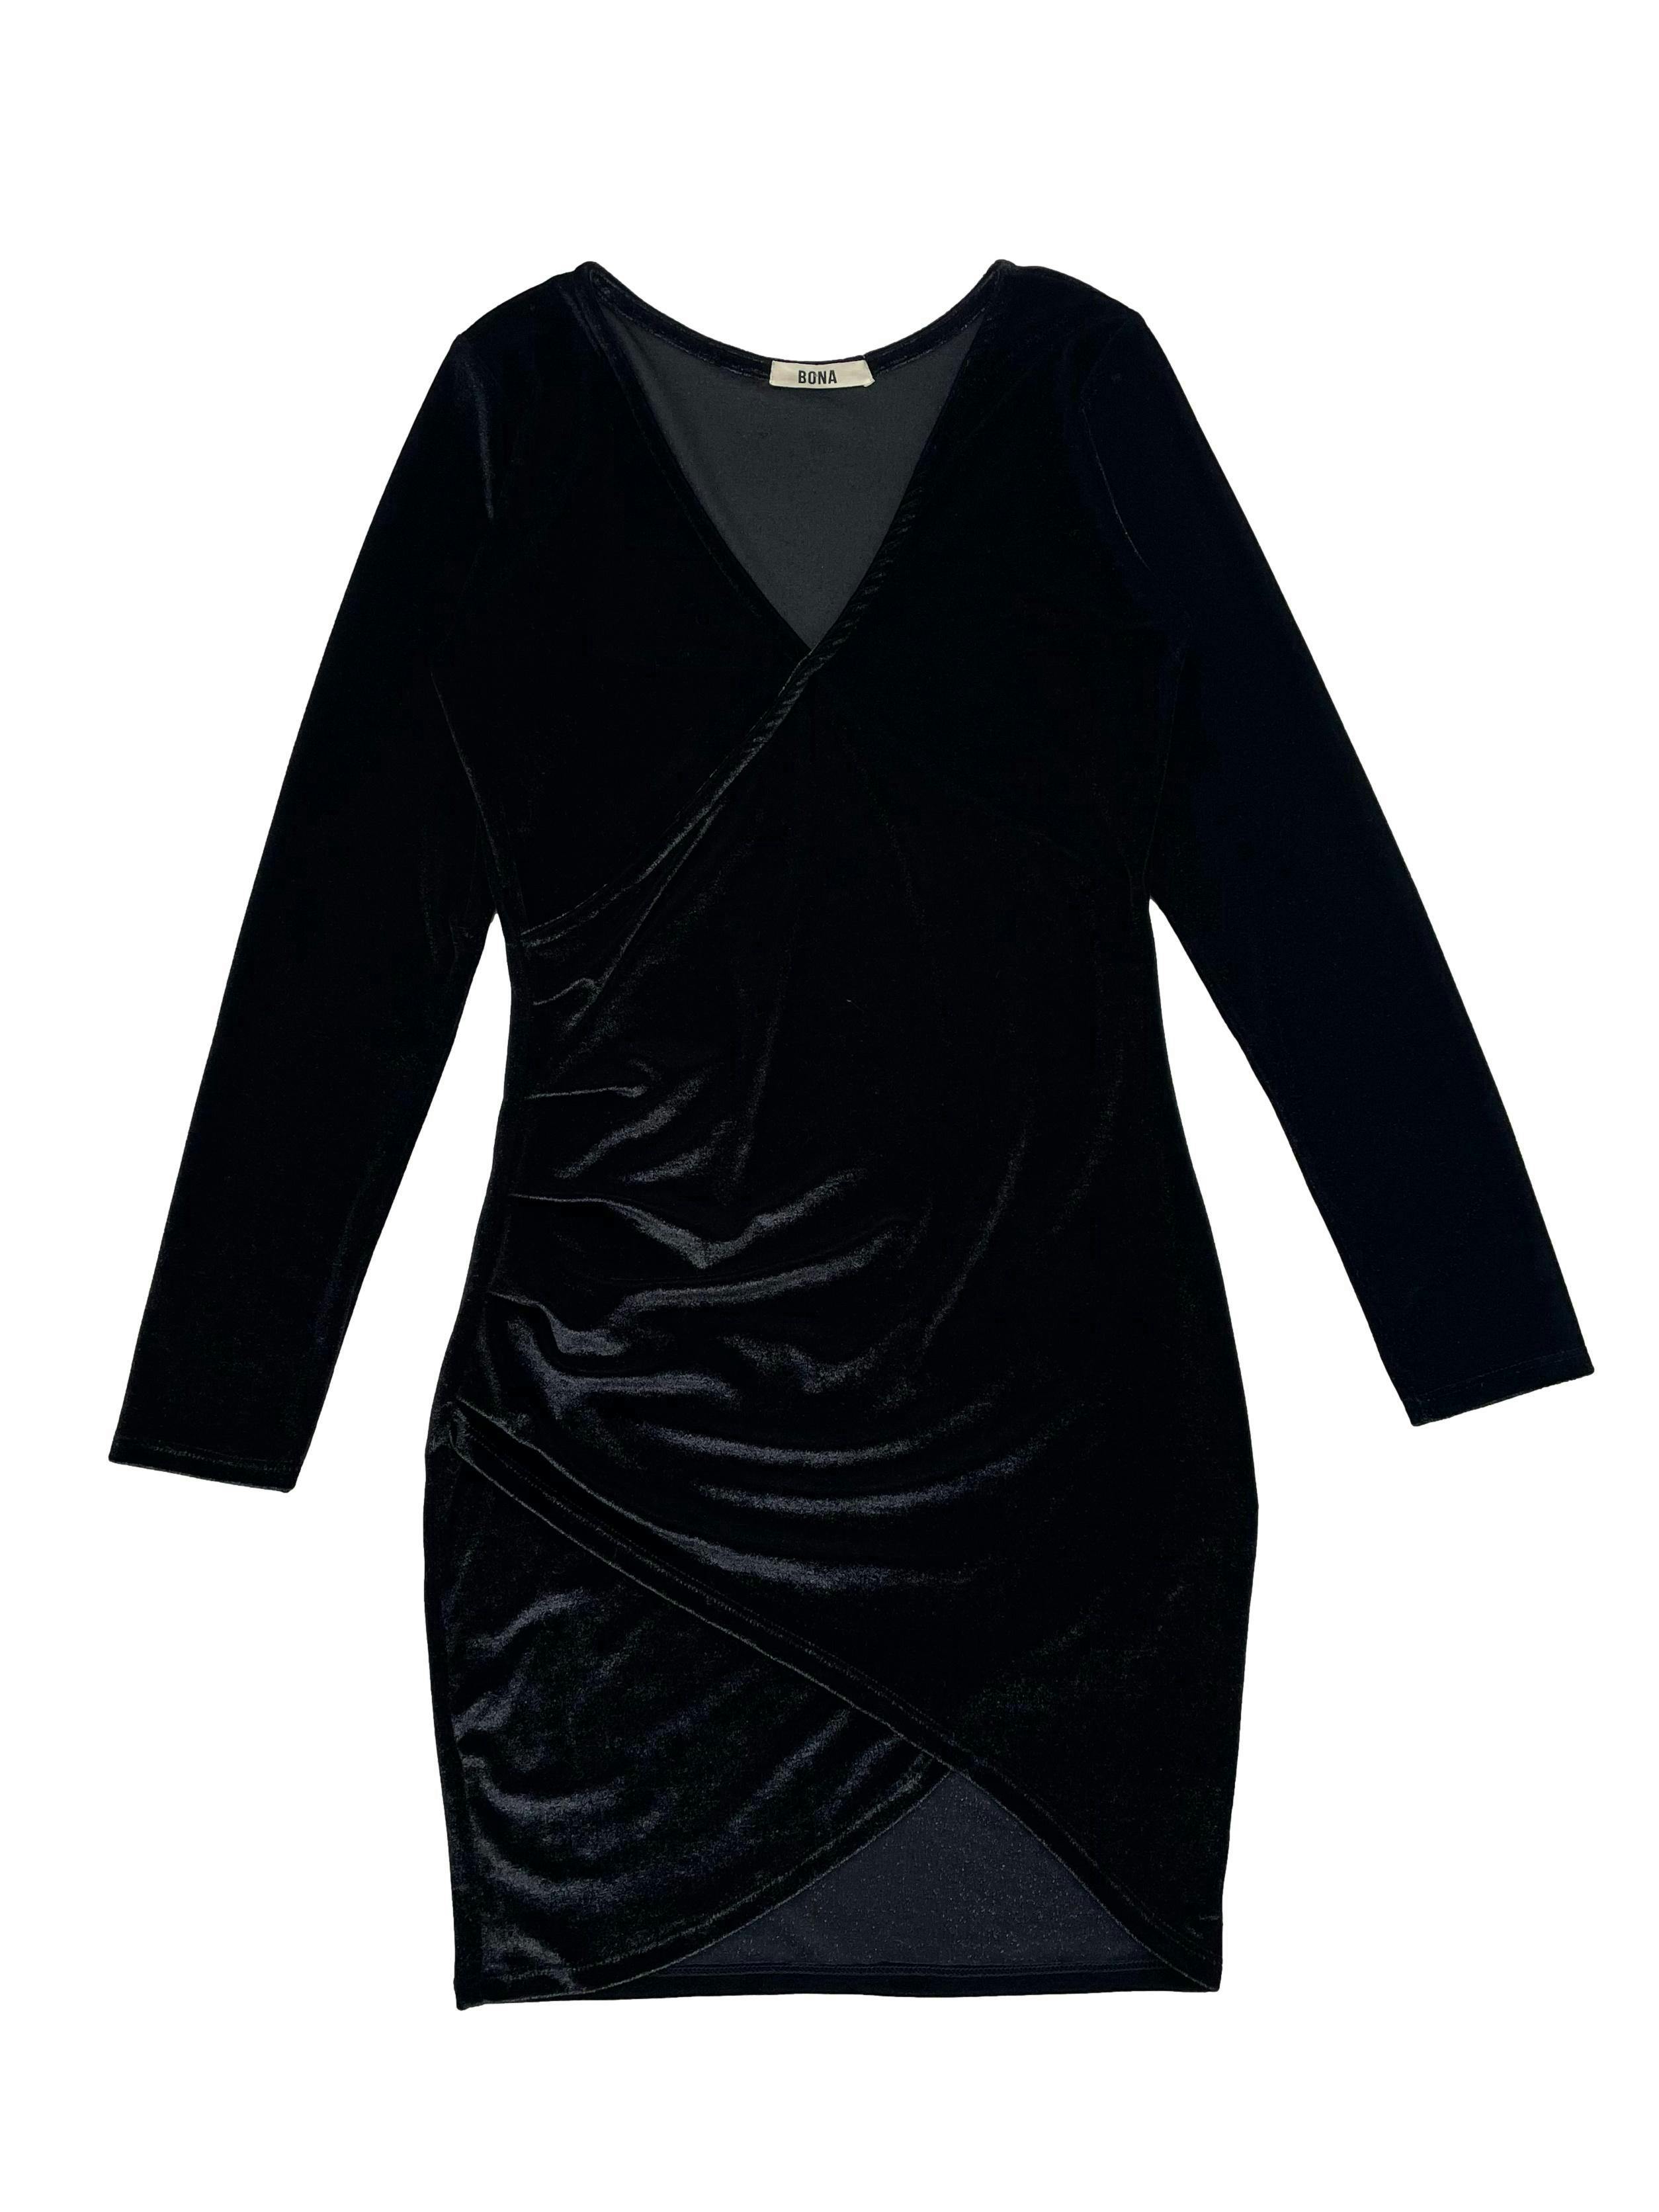 Vestido Bona negro de terciopelo brillante,modelo cruzado con pliegues laterales y escote en V. Busto 78cm, Largo 82cm.